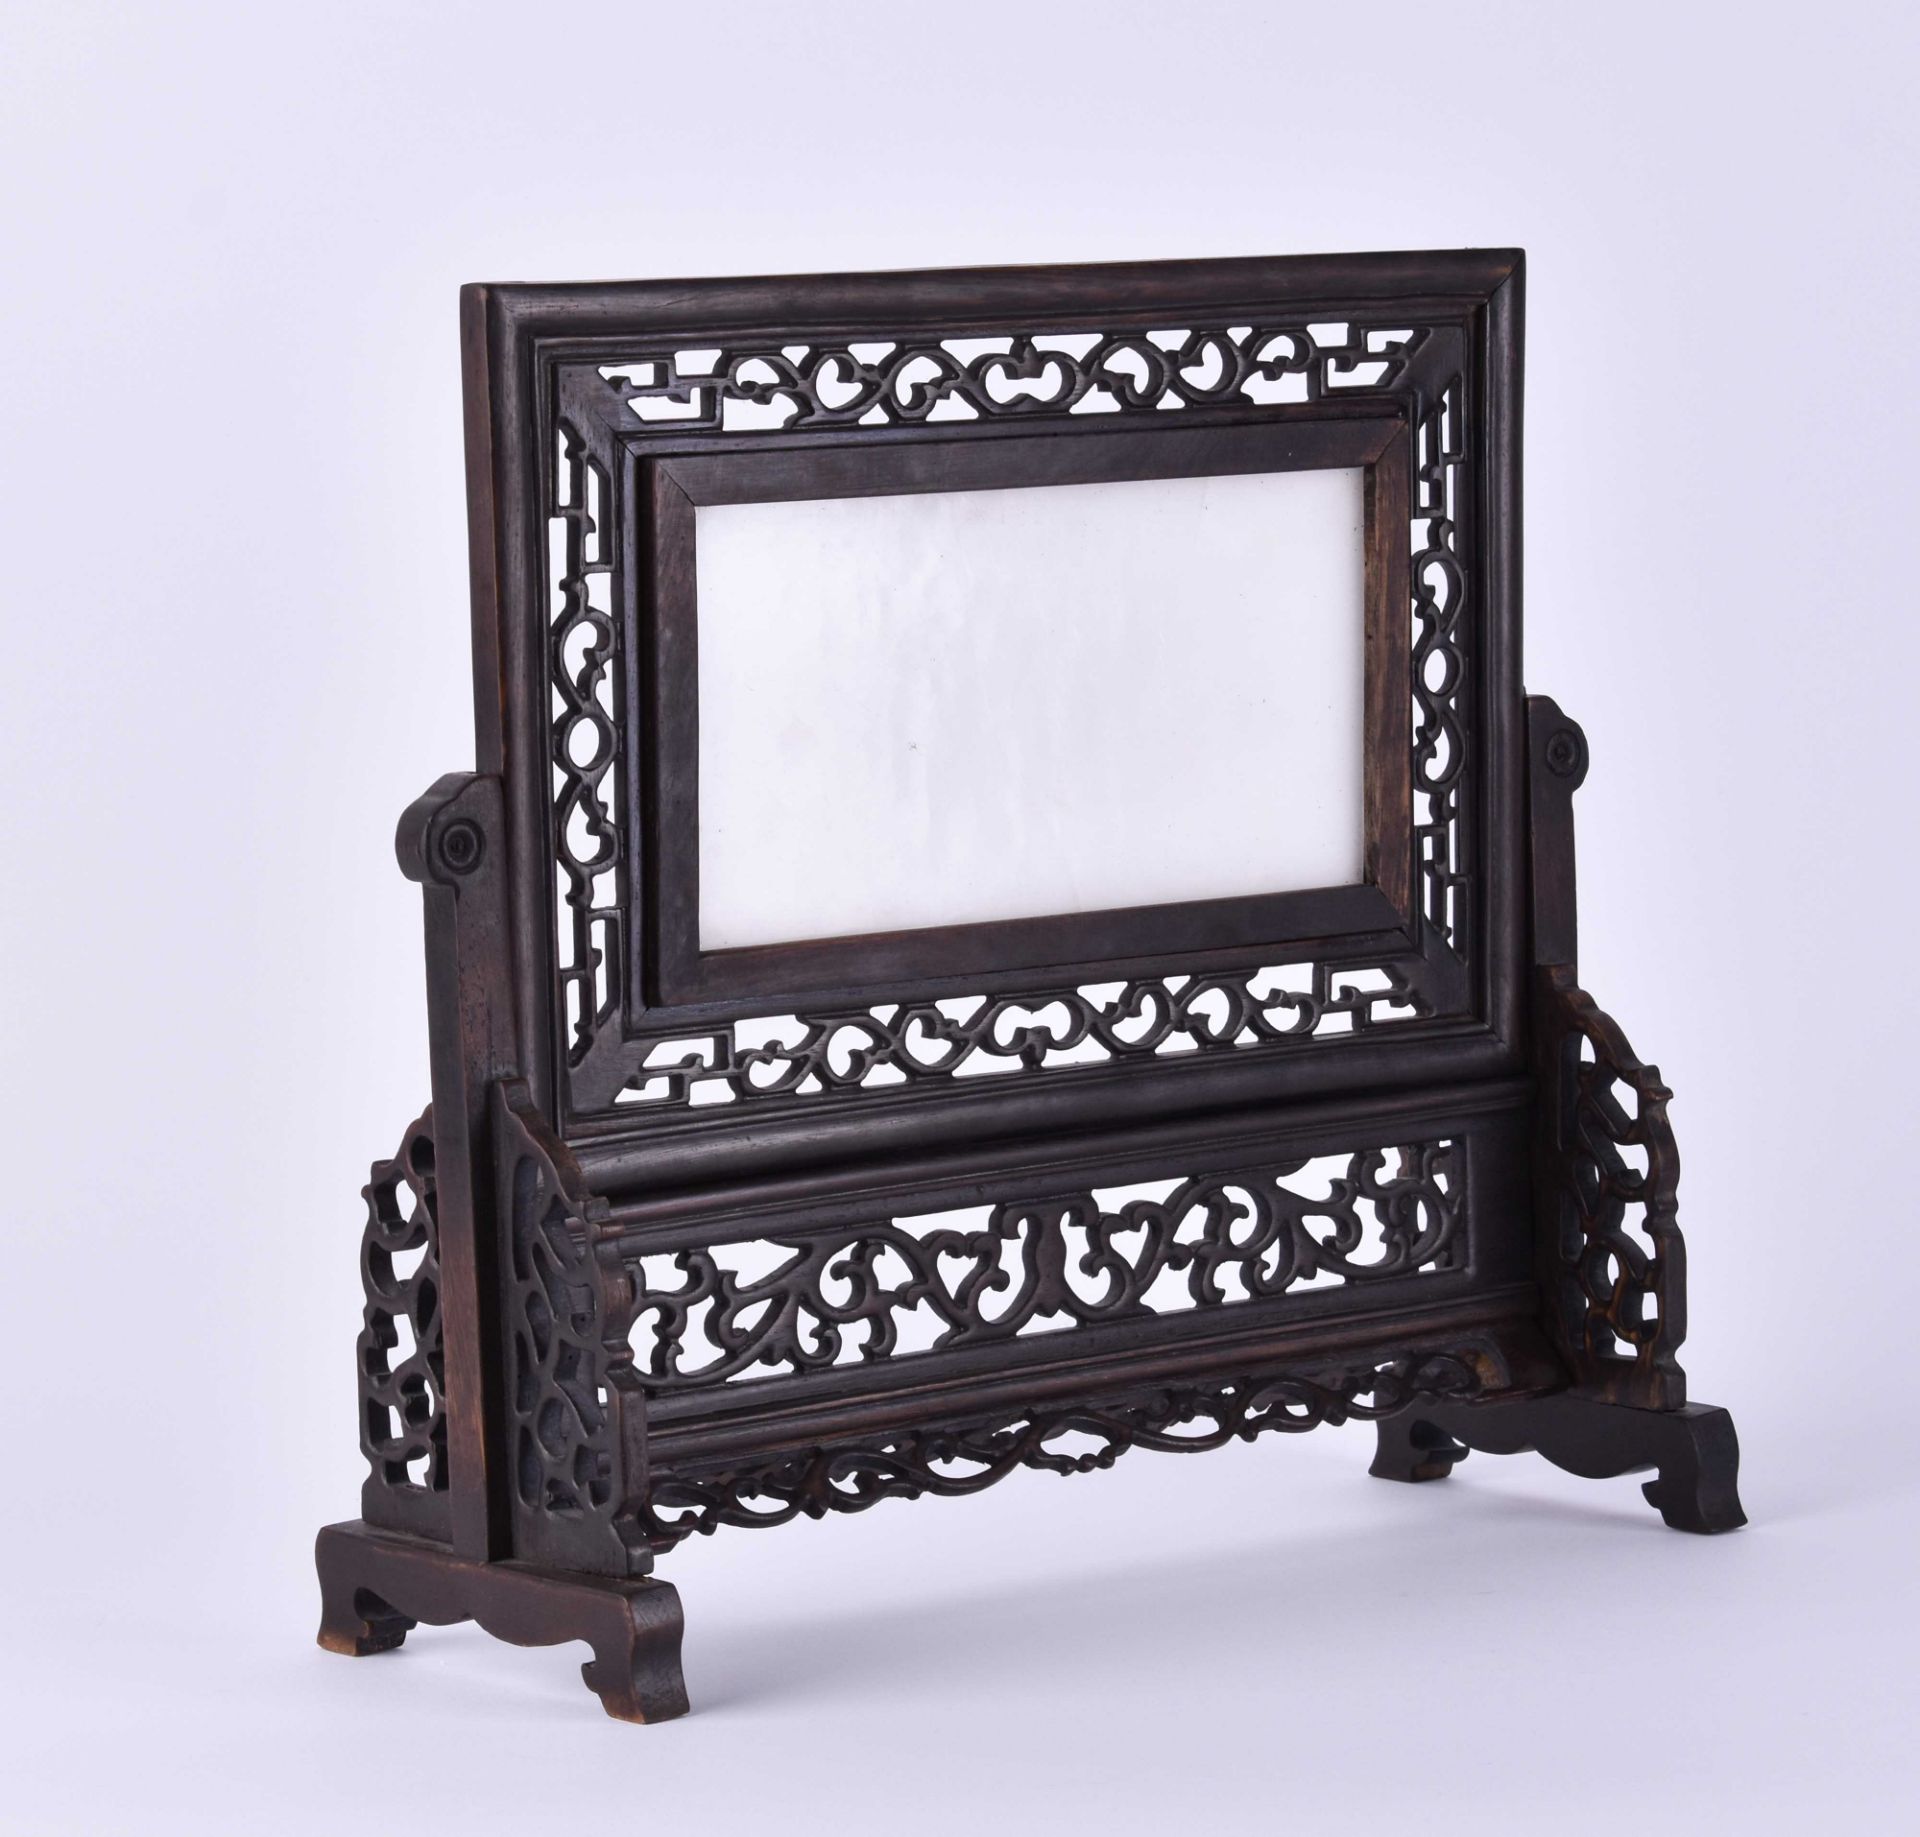 Jade Stellschirm China Qing Dynastie - Bild 2 aus 3